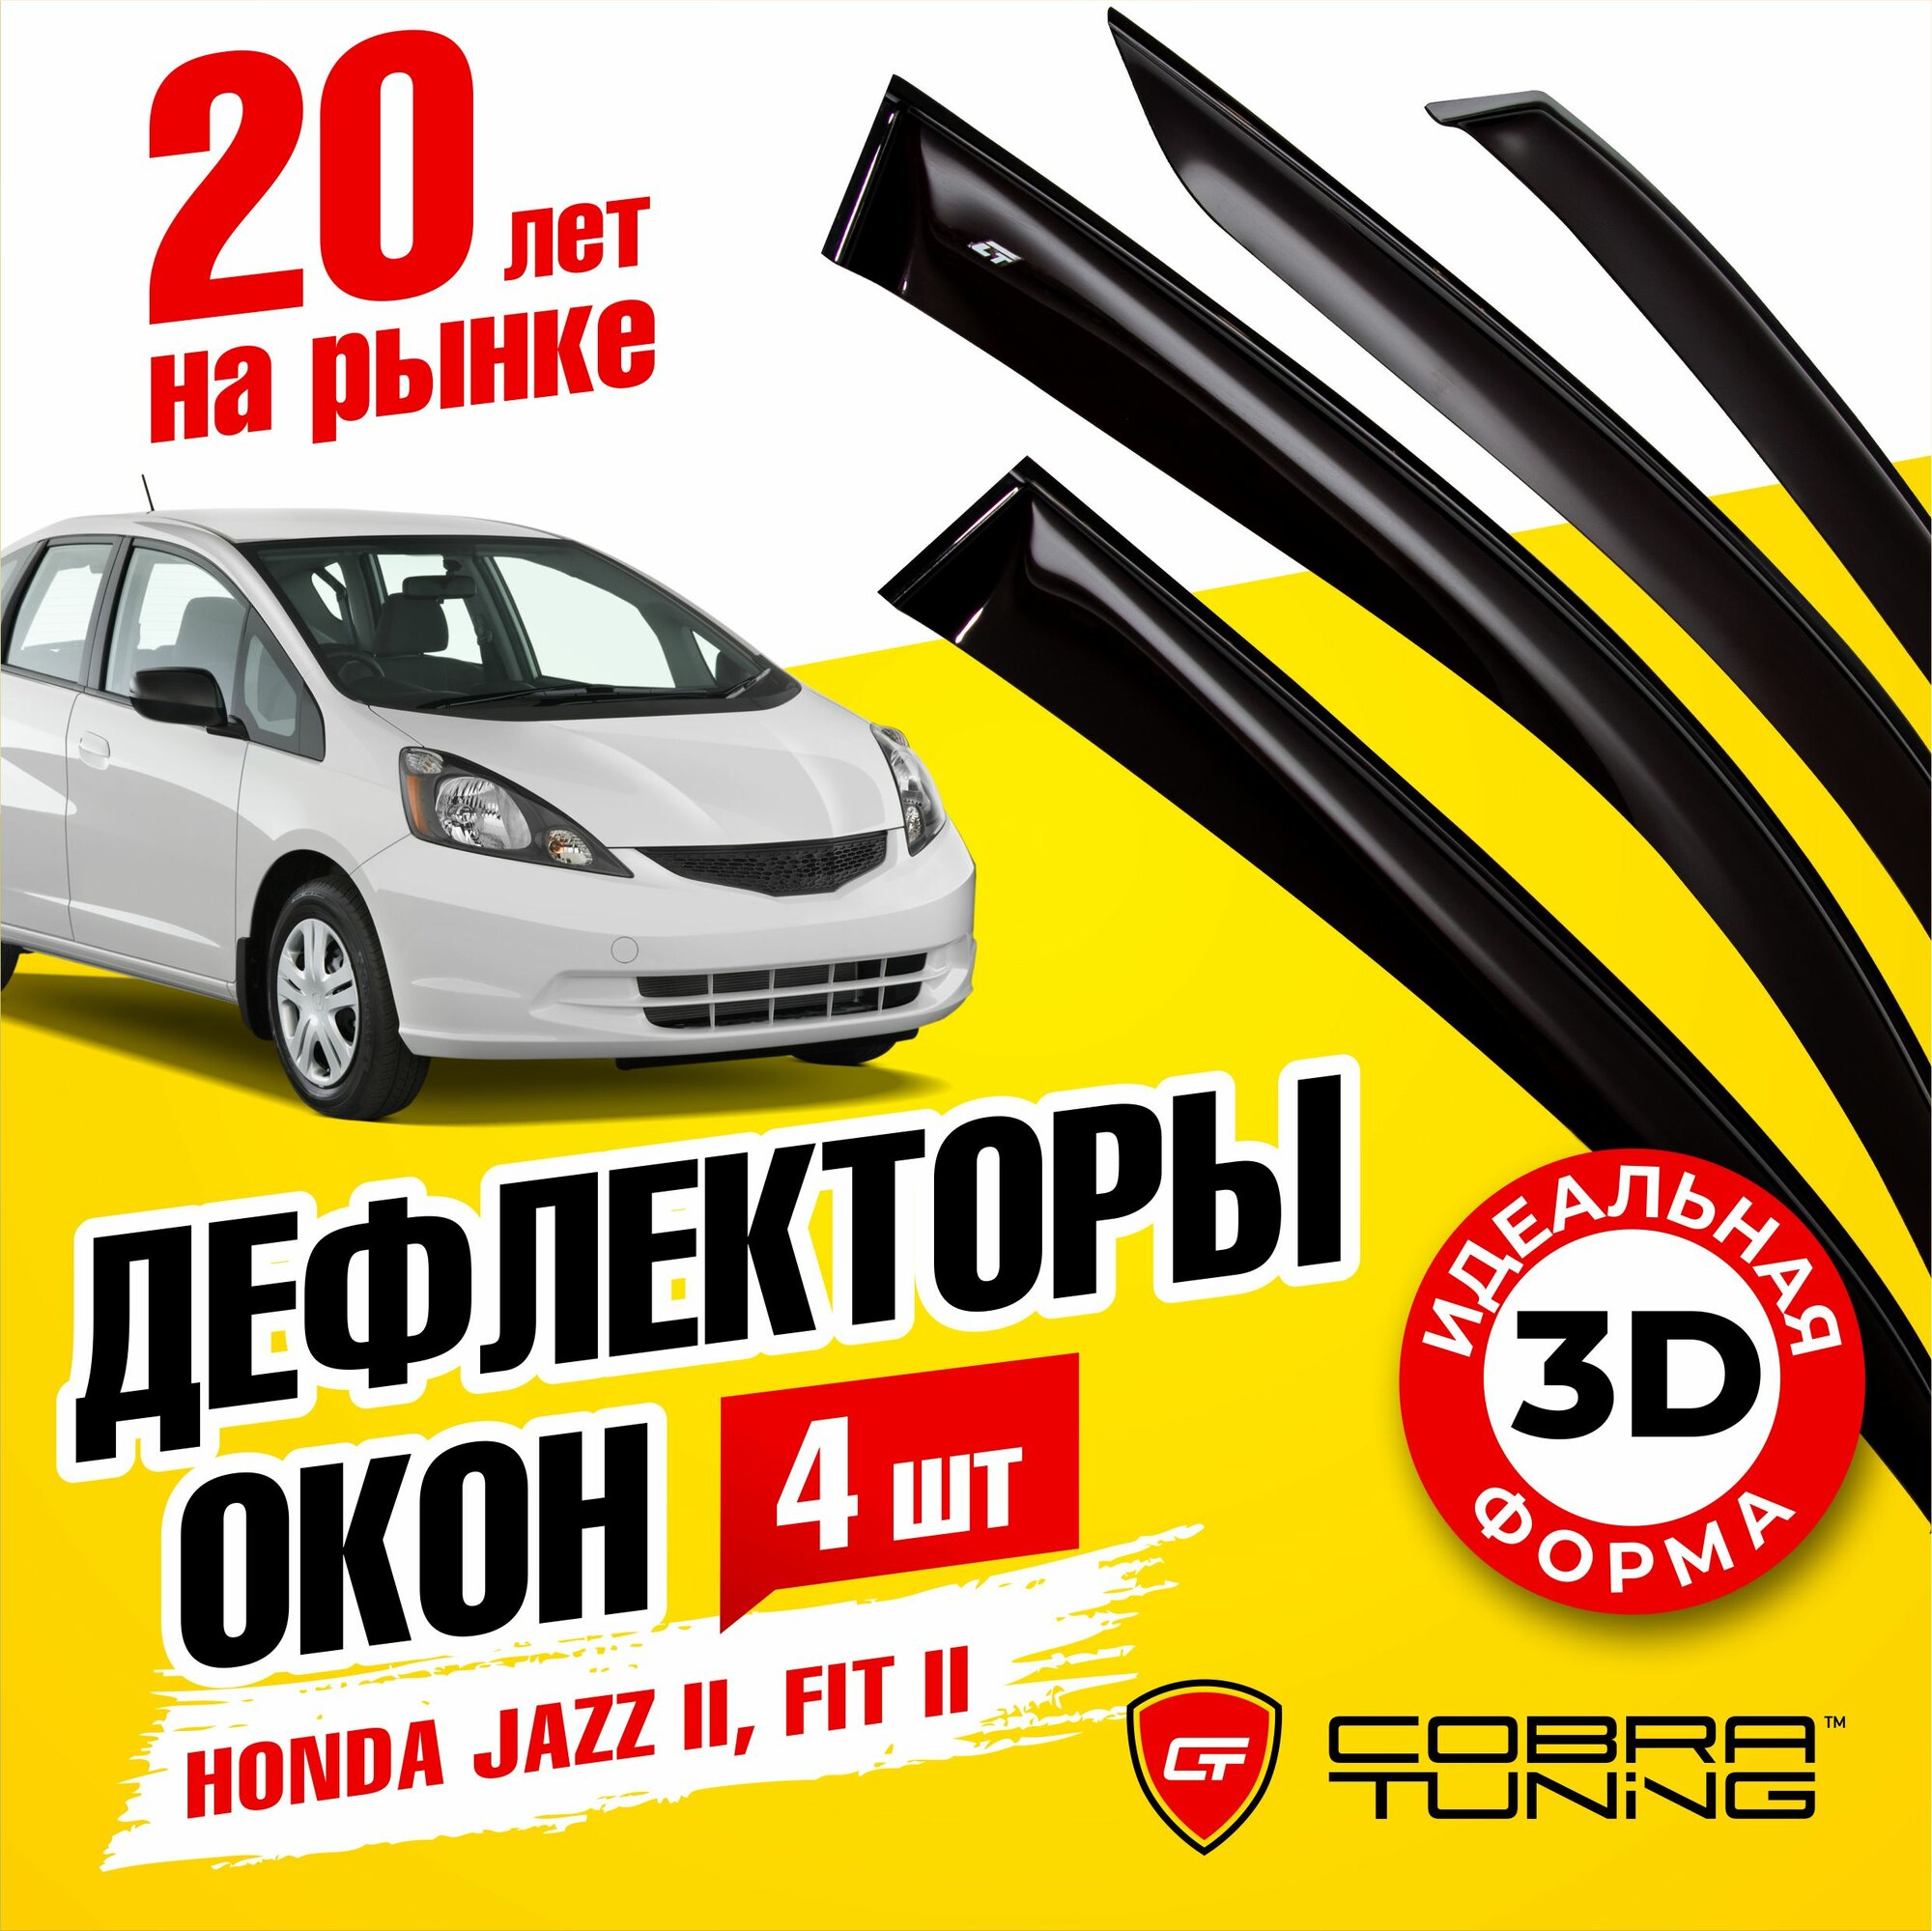 Дефлекторы боковых окон для автомобиля Honda Jazz II (Хонда Джаз 2) Fit II (Фит) 2008-2014 ветровики с хром молдингом Cobra Tuning